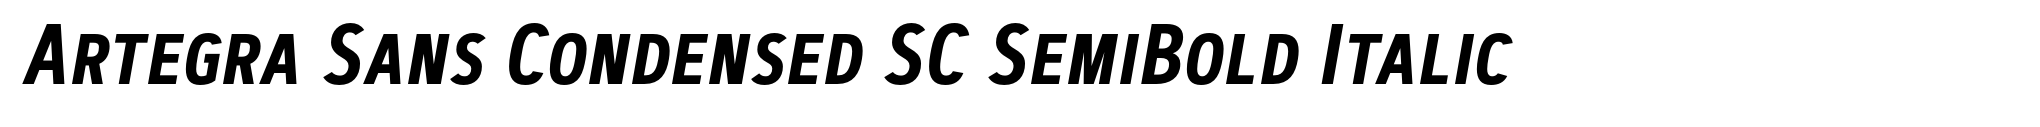 Artegra Sans Condensed SC SemiBold Italic image